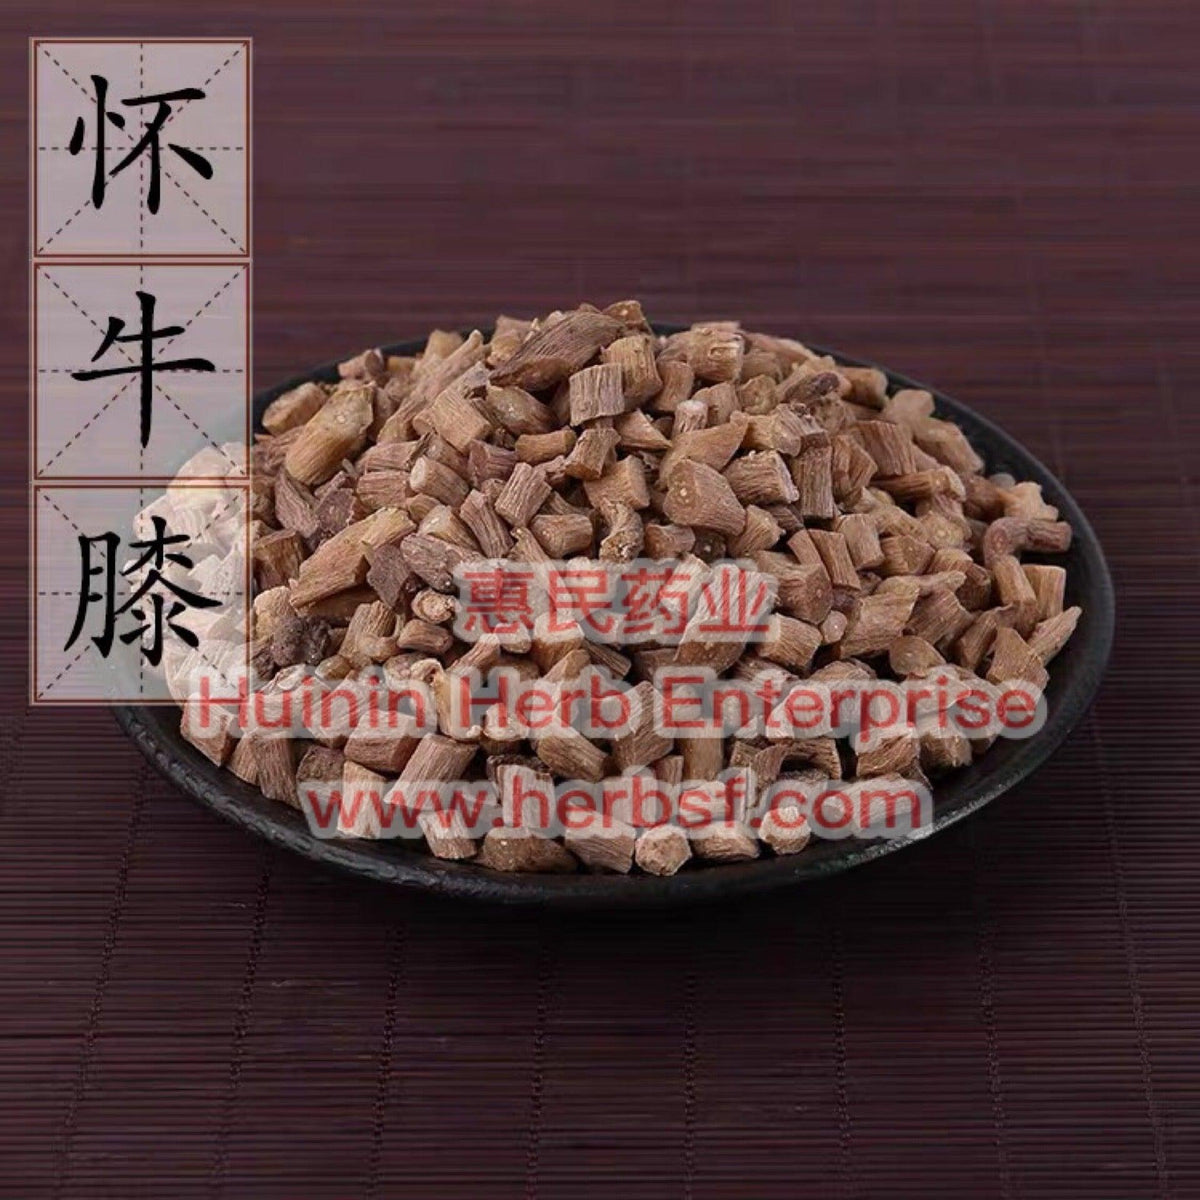 Huai Niu Xi 4oz - Huimin Herb Online, LLC